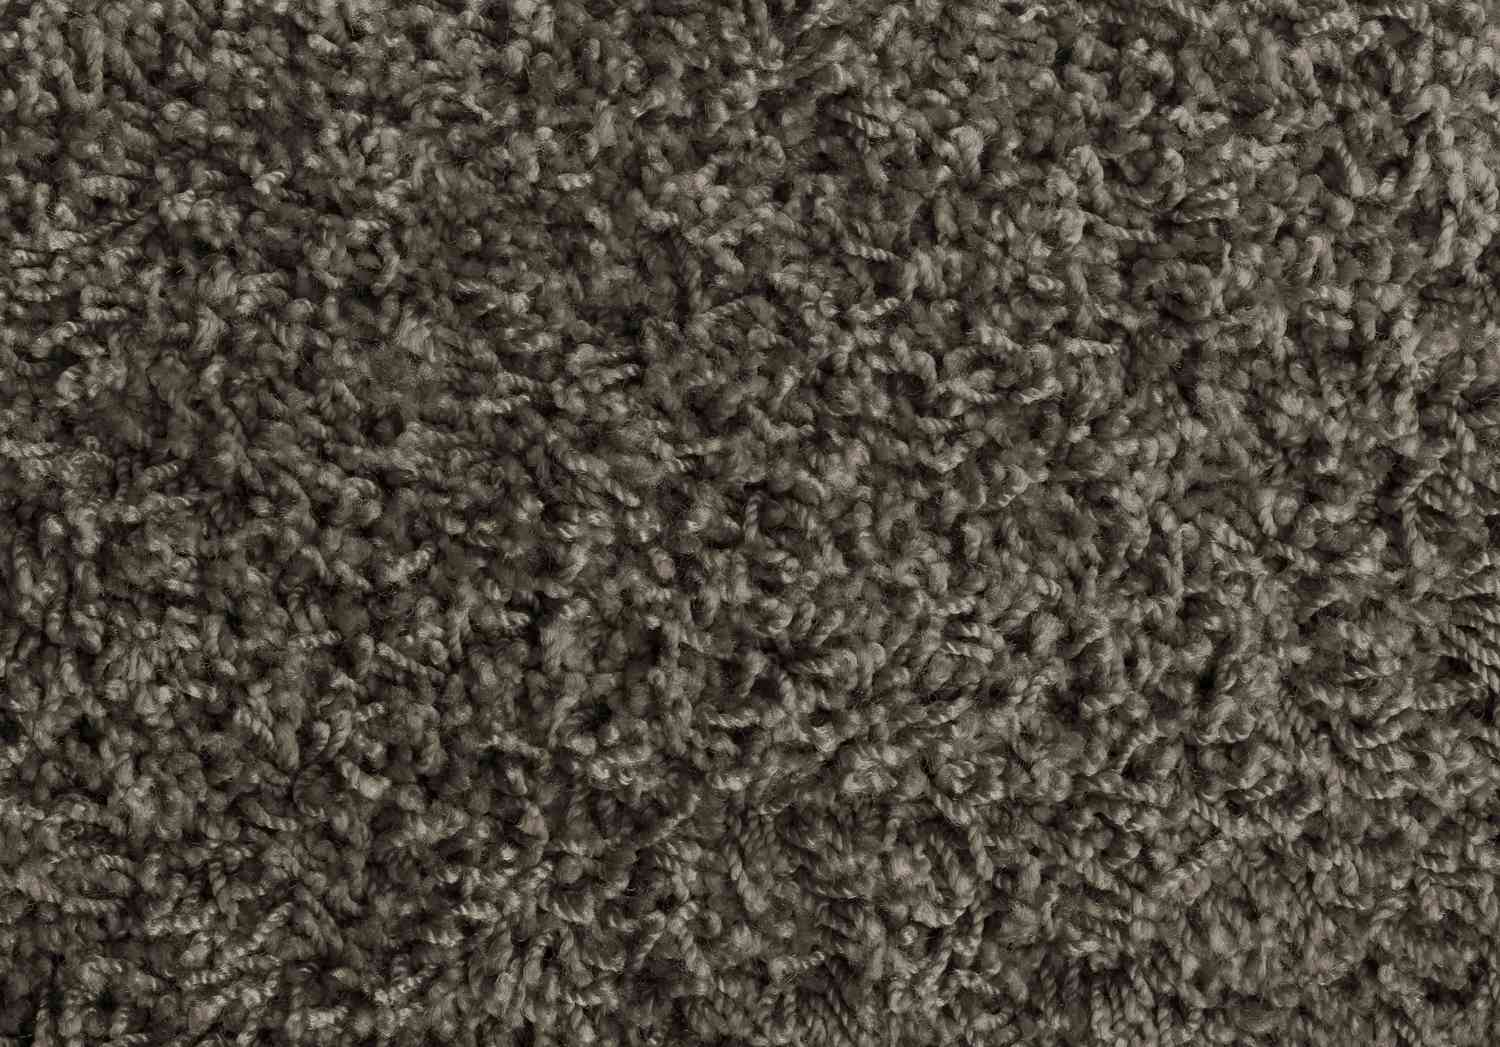 Close-up of a nylon rug